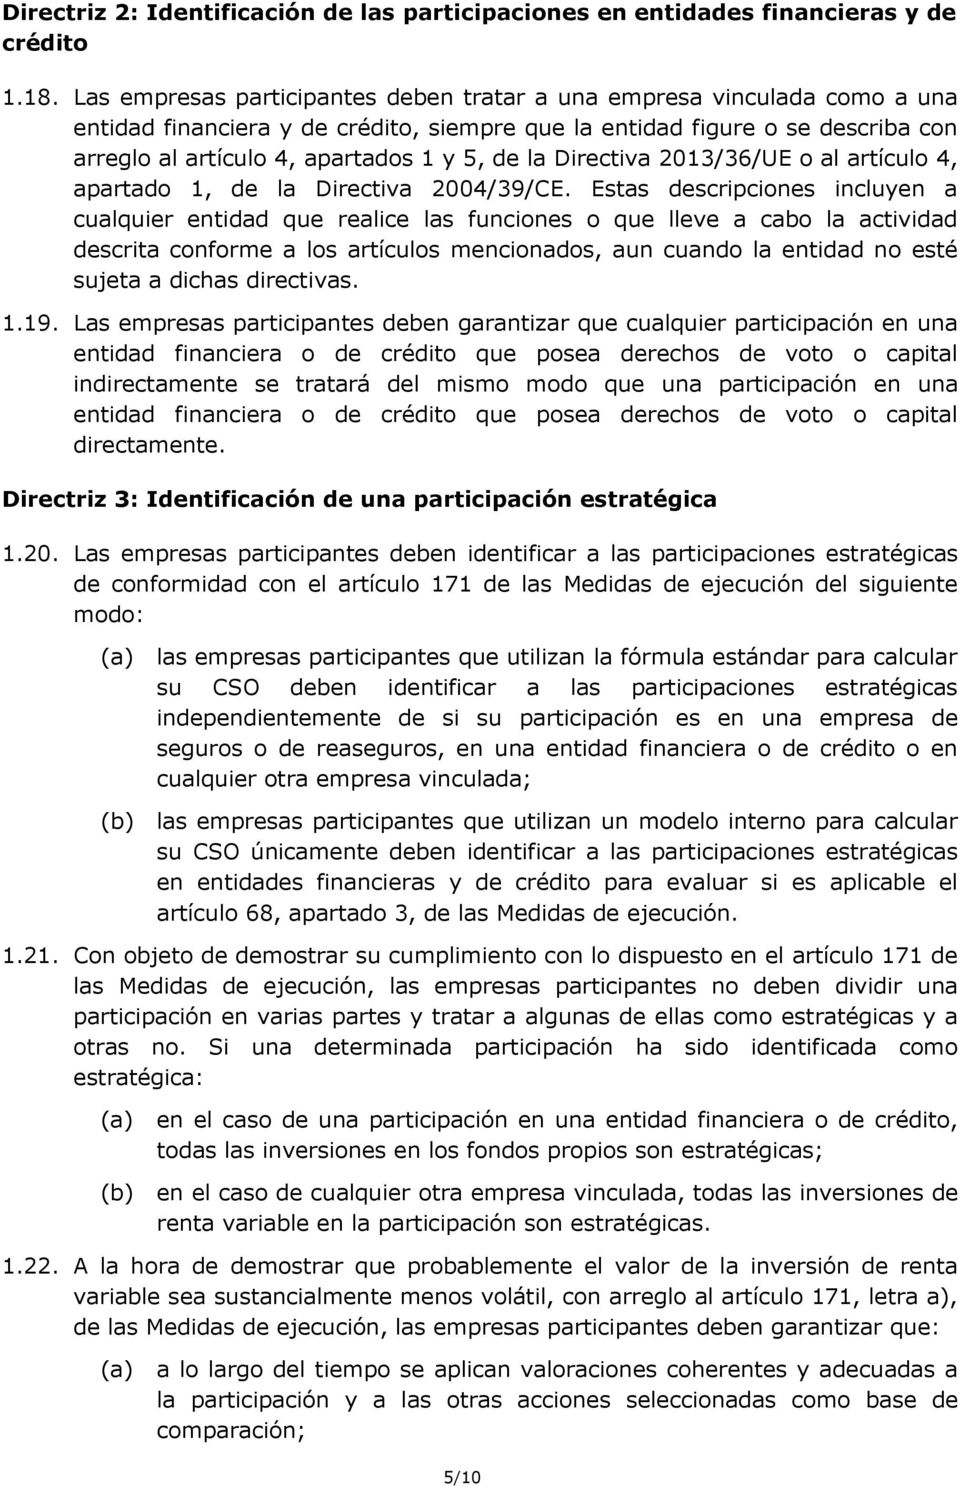 la Directiva 2013/36/UE o al artículo 4, apartado 1, de la Directiva 2004/39/CE.